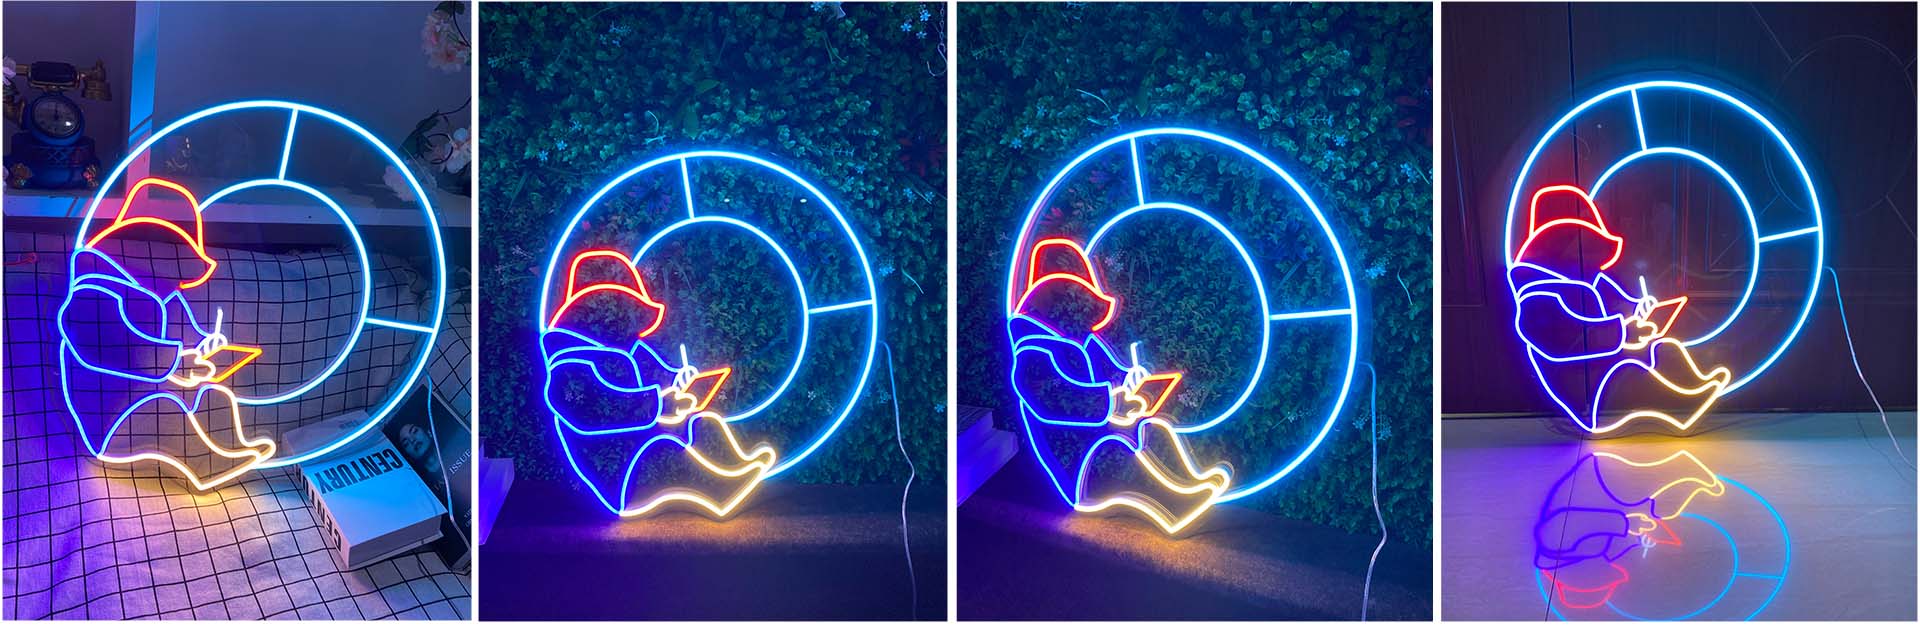 Neon bear led light sign